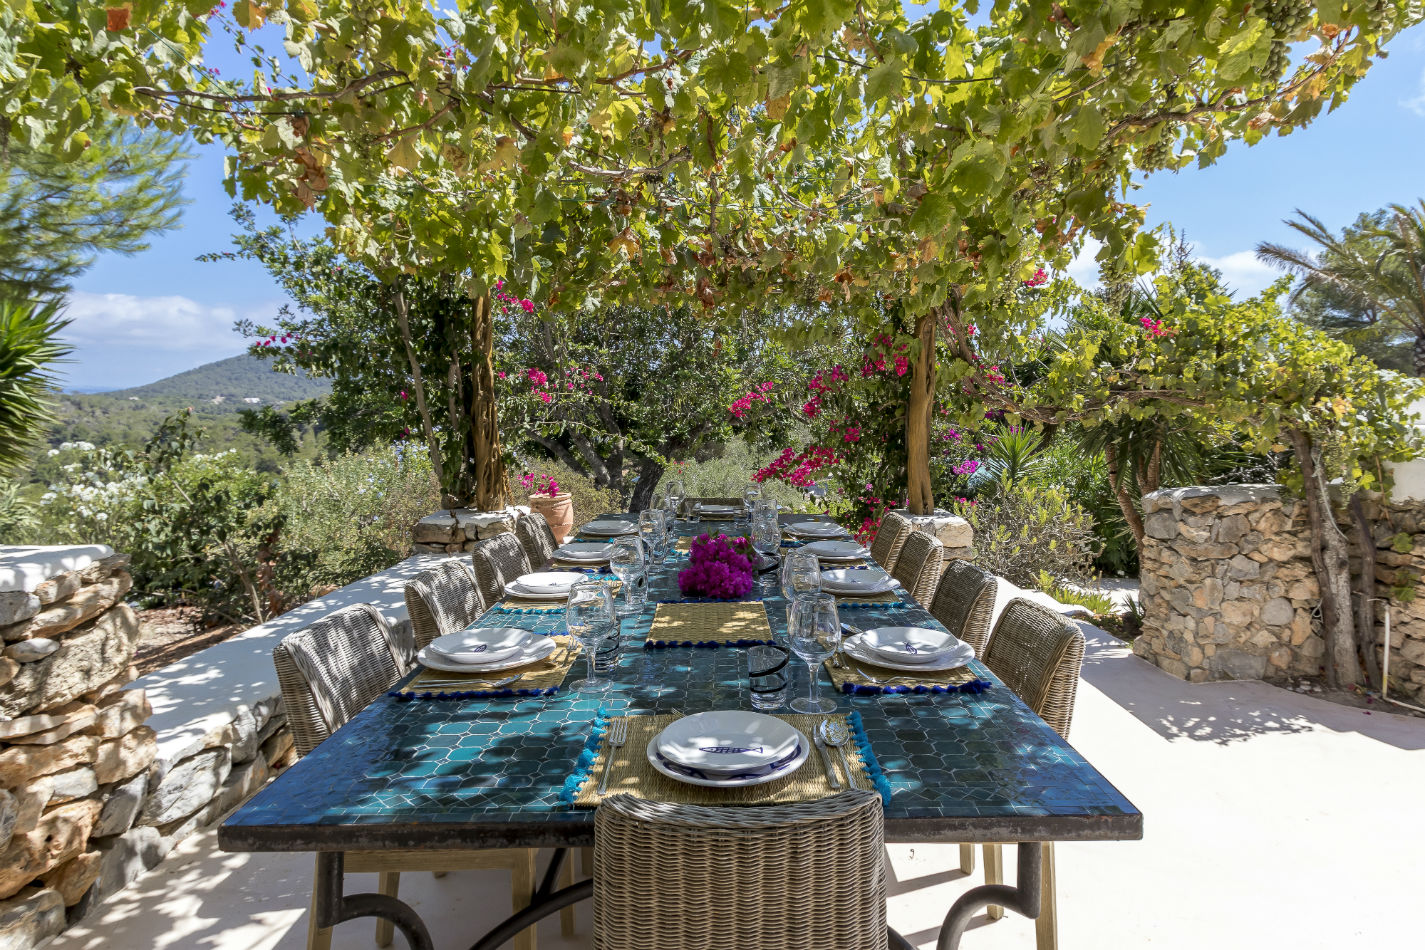 Finca Rural Luxus Ferienhaus Ibiza Mieten Outdoor Esstisch Unter Wildem Wein